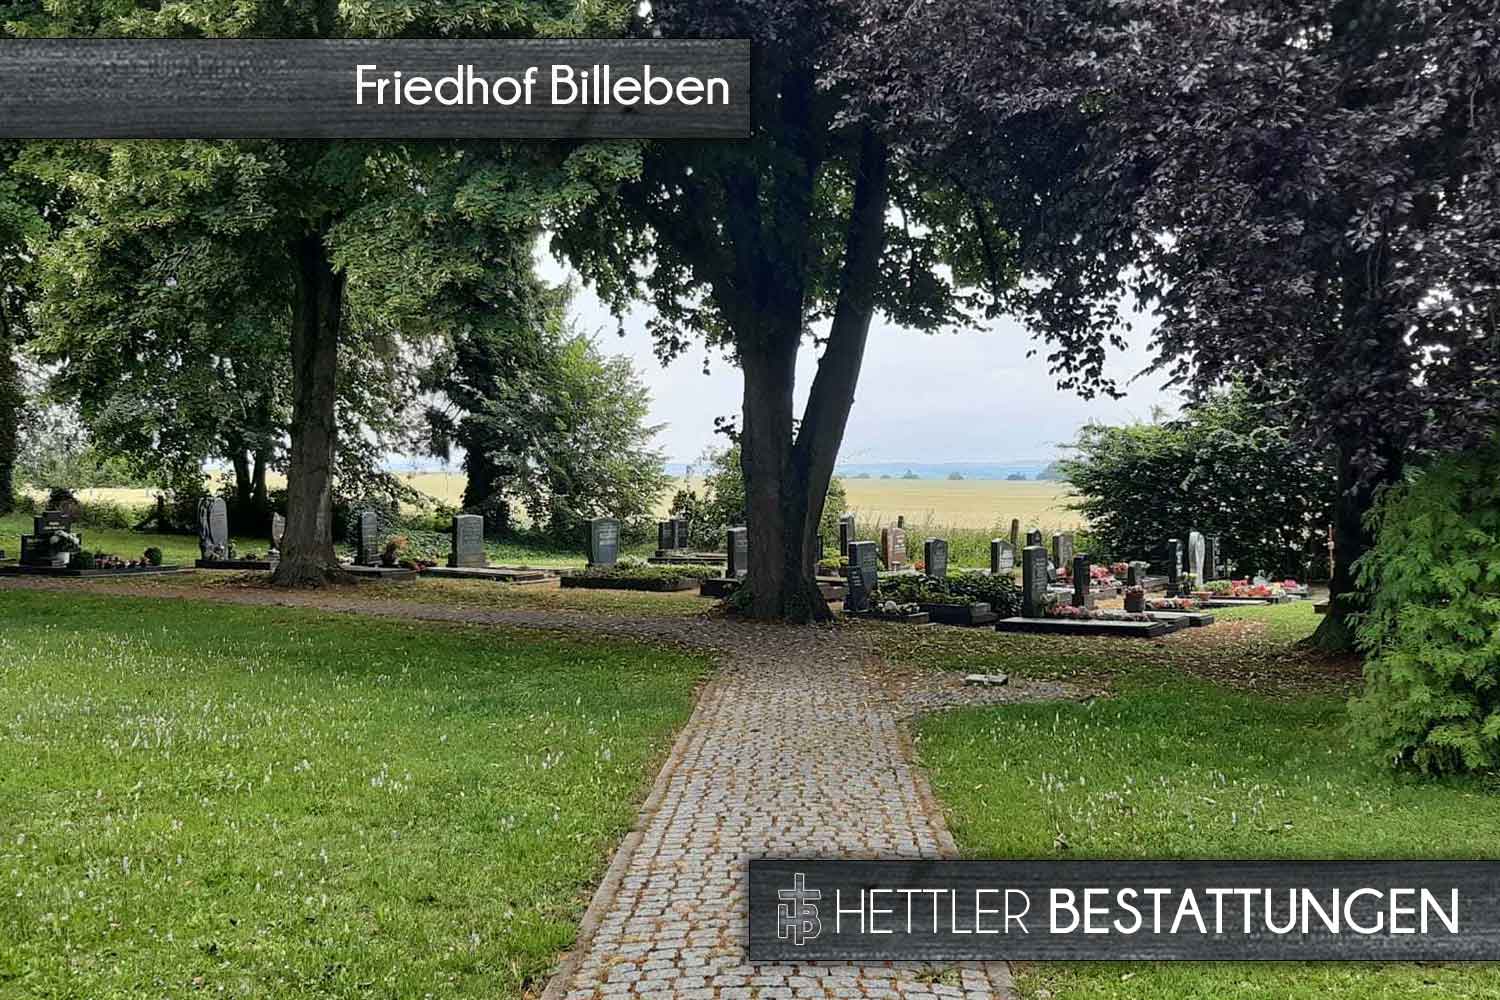 Friedhof in Billeben. Ihr Ort des Abschieds mit Hettler Bestattungen.